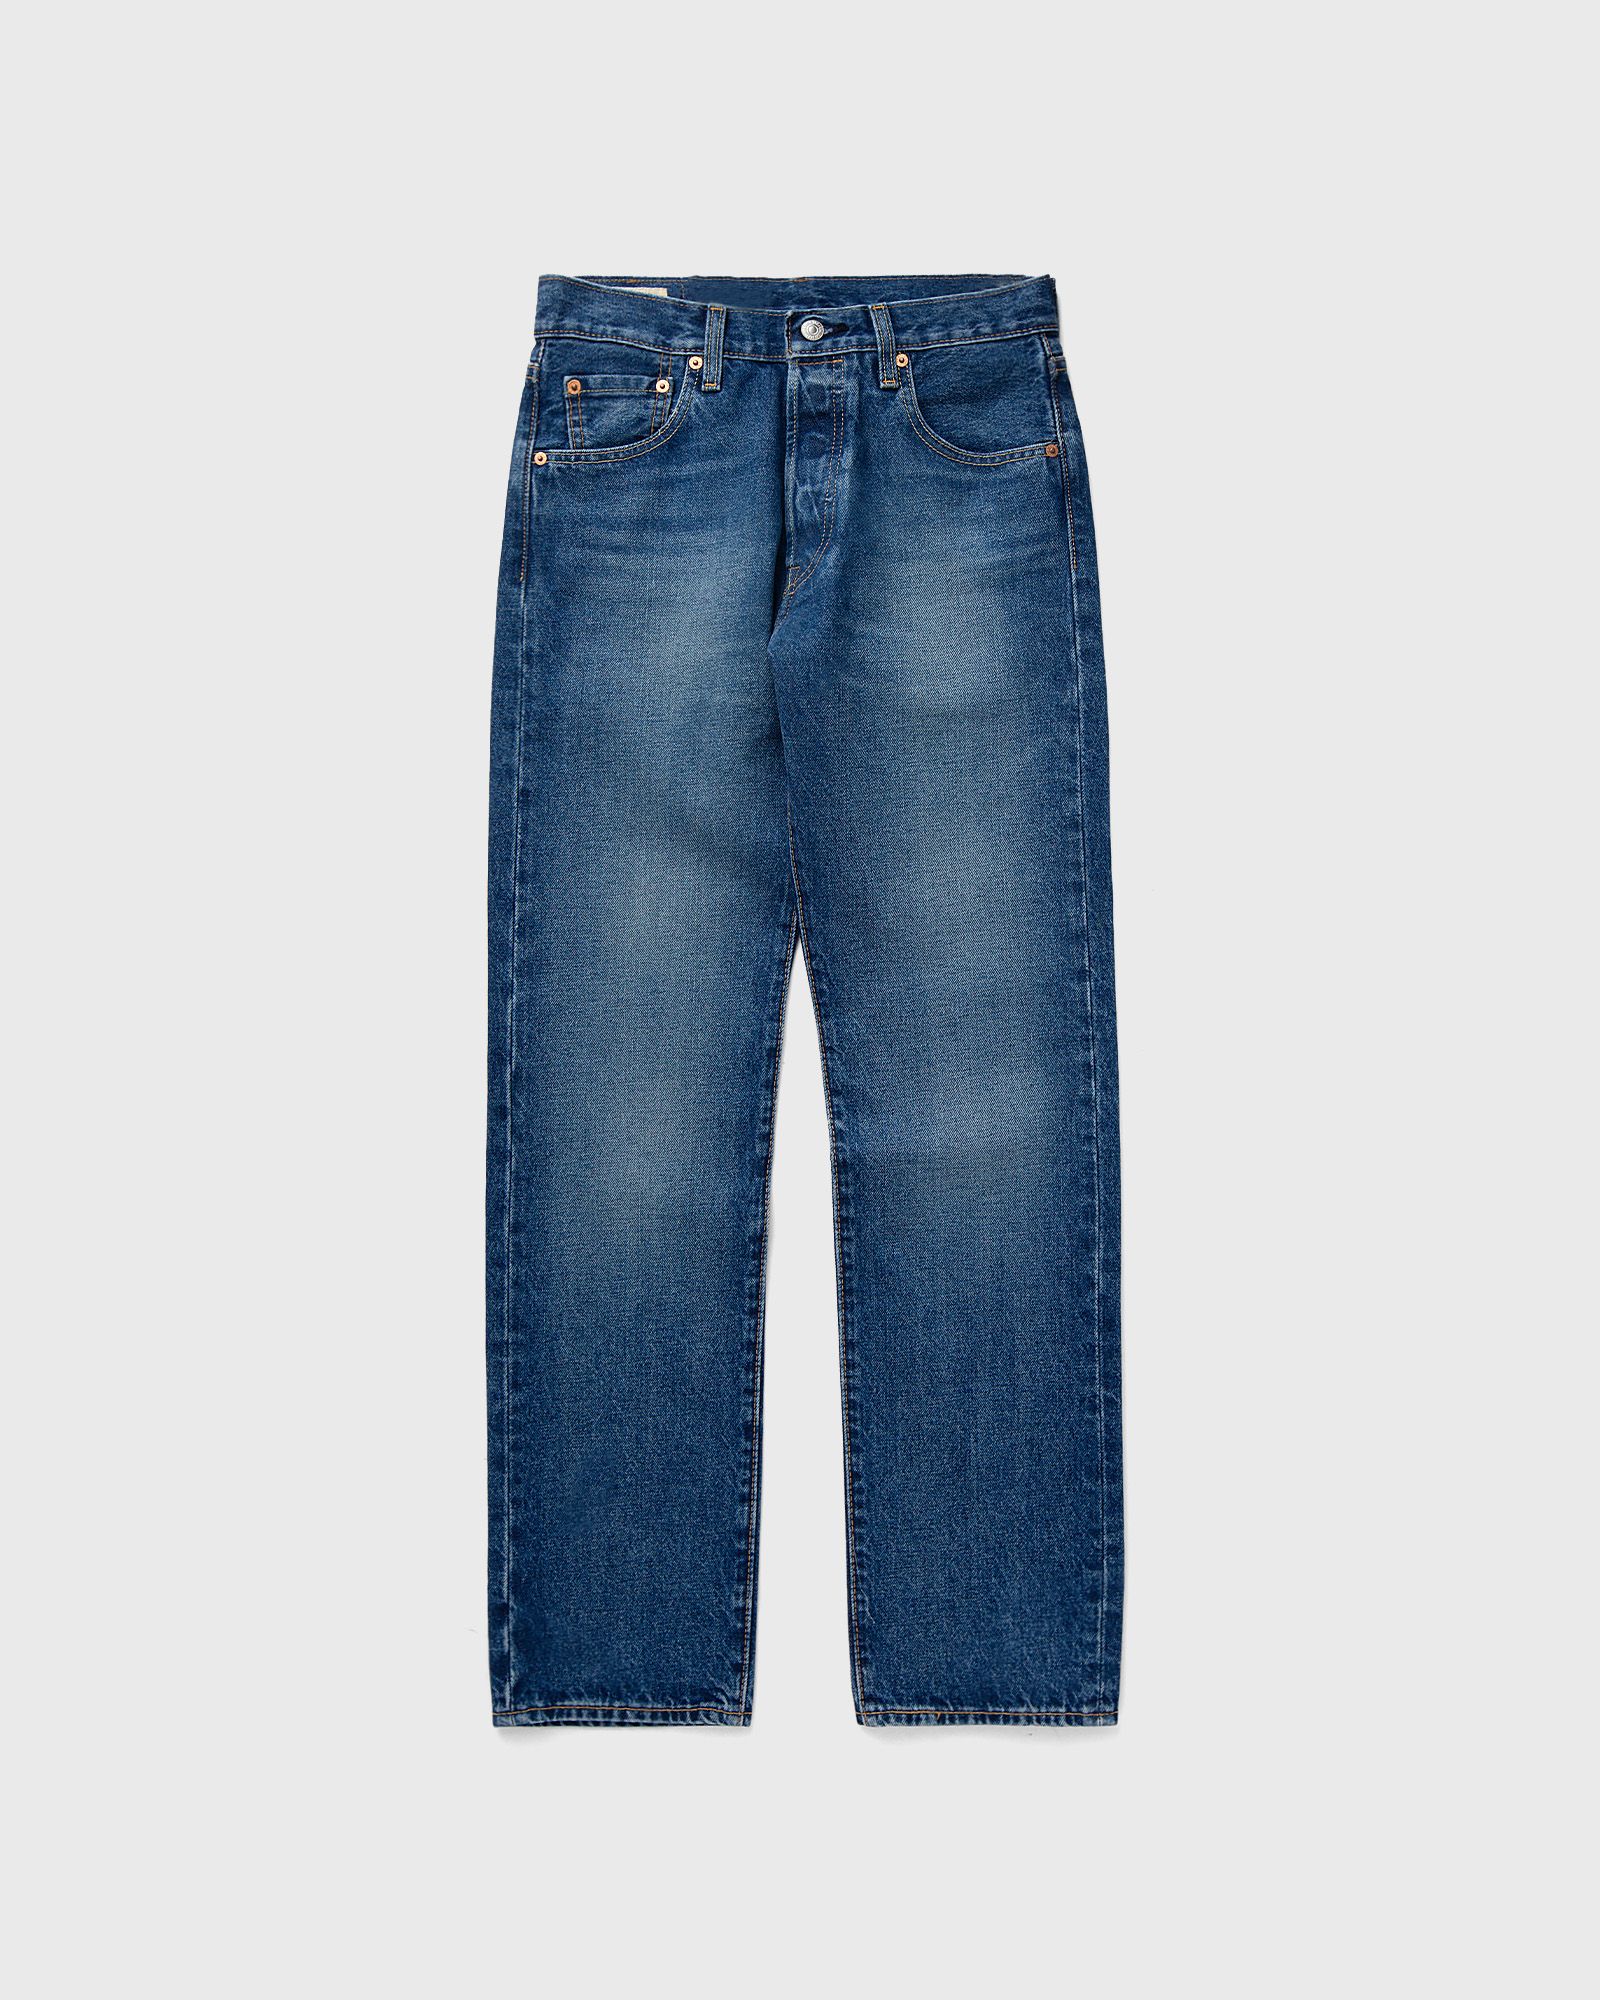 Levis - 501 93 straight men jeans blue in größe:xxl